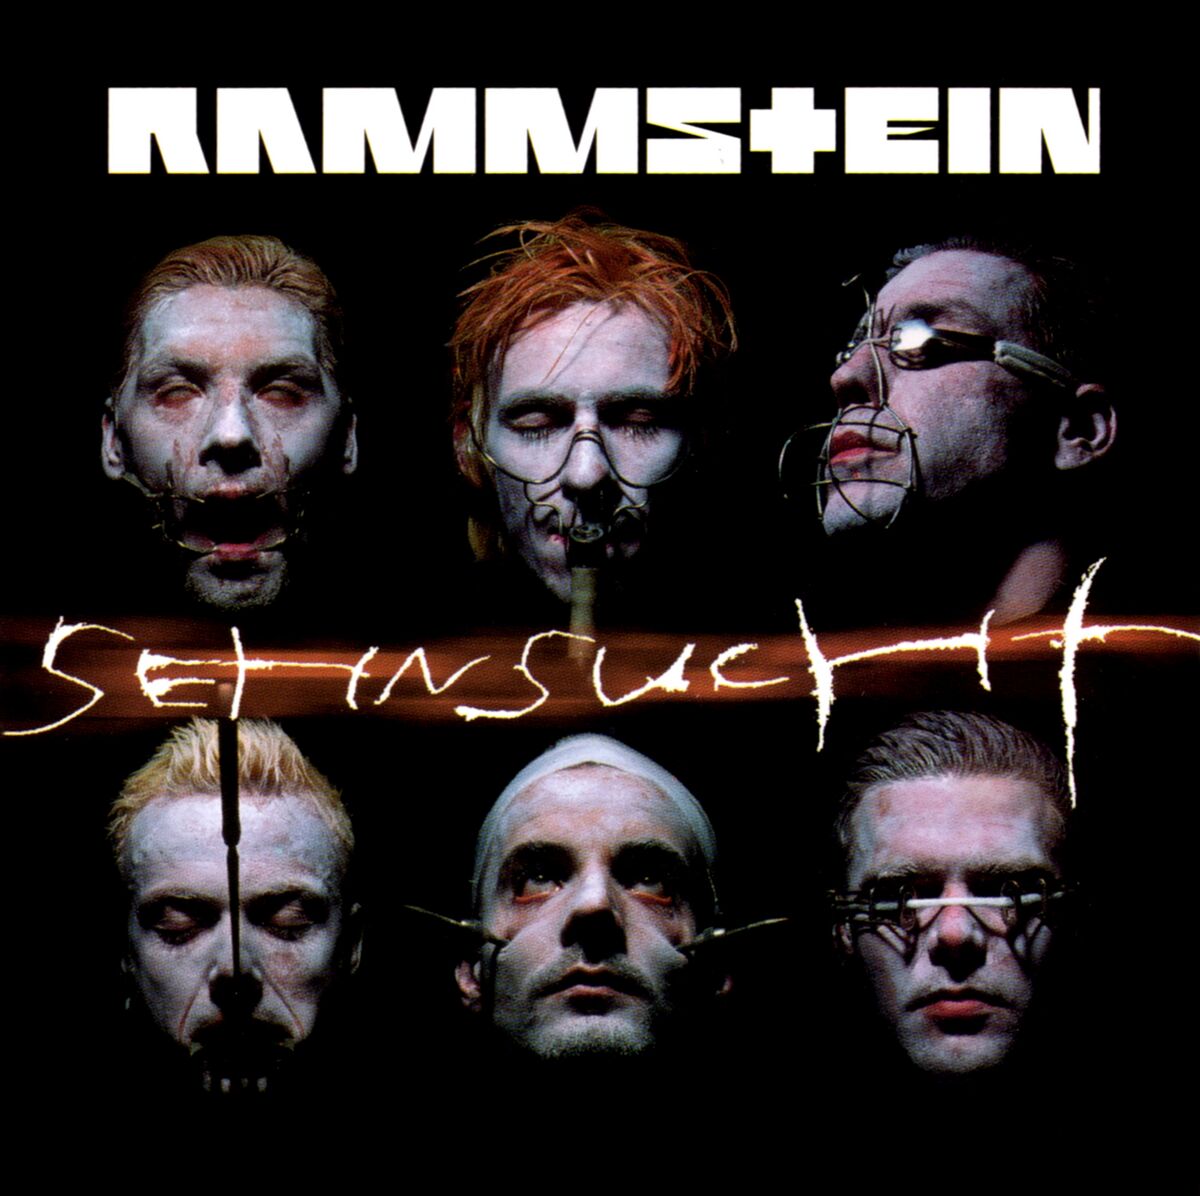 Sehnsucht (single) - RammWiki